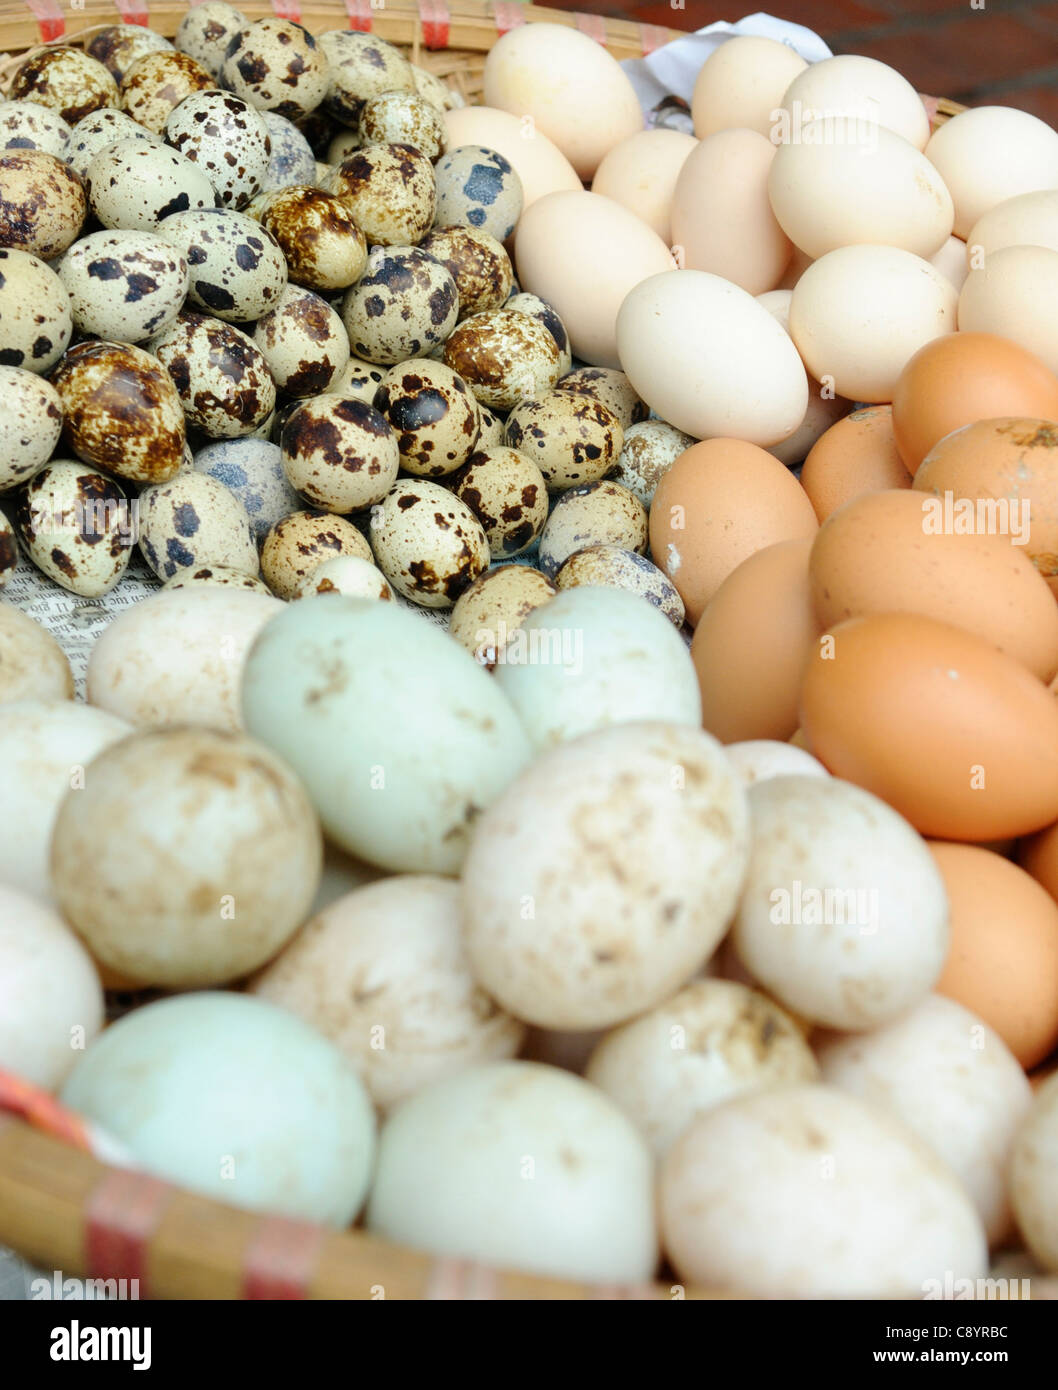 Asien, Vietnam, Hanoi. Hanoi Altstadt. Verkauft eine Vielzahl von Eiern auf dem Markt... Stockfoto